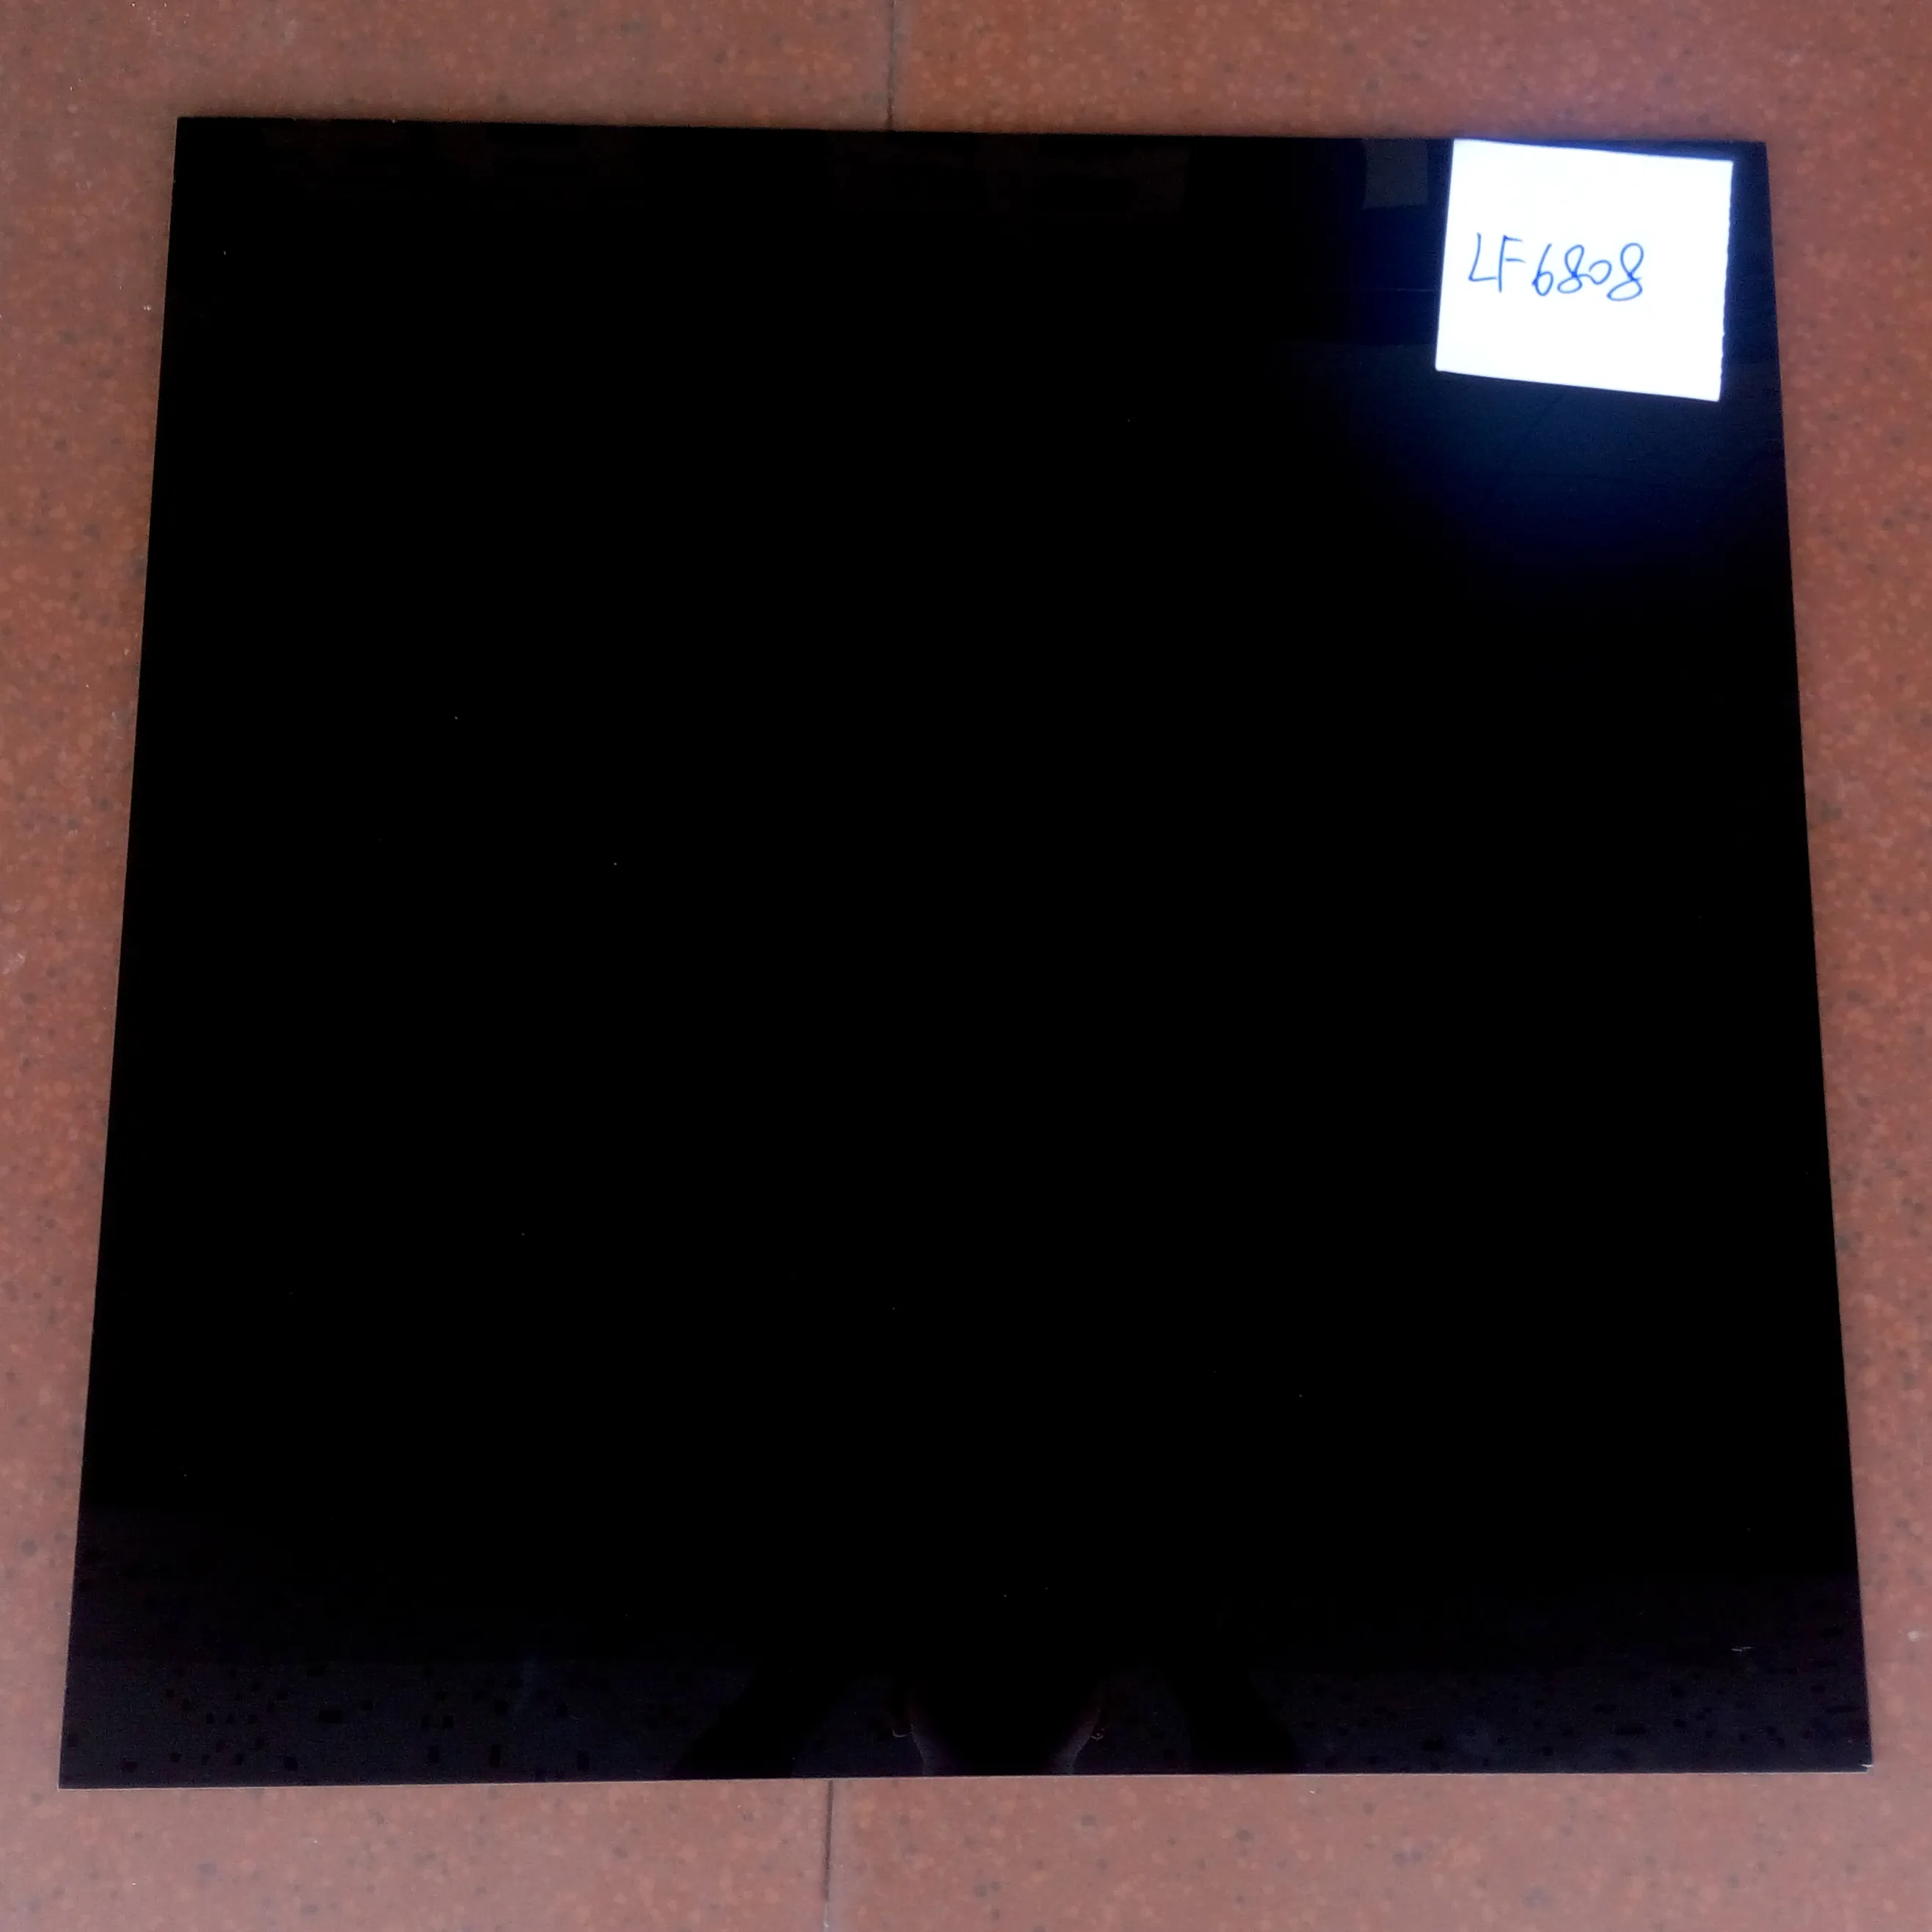 Piastrelle nere Super nere 600x600mm 800x800mm piastrelle in ceramica piastrelle nere smaltate per pavimenti e pareti